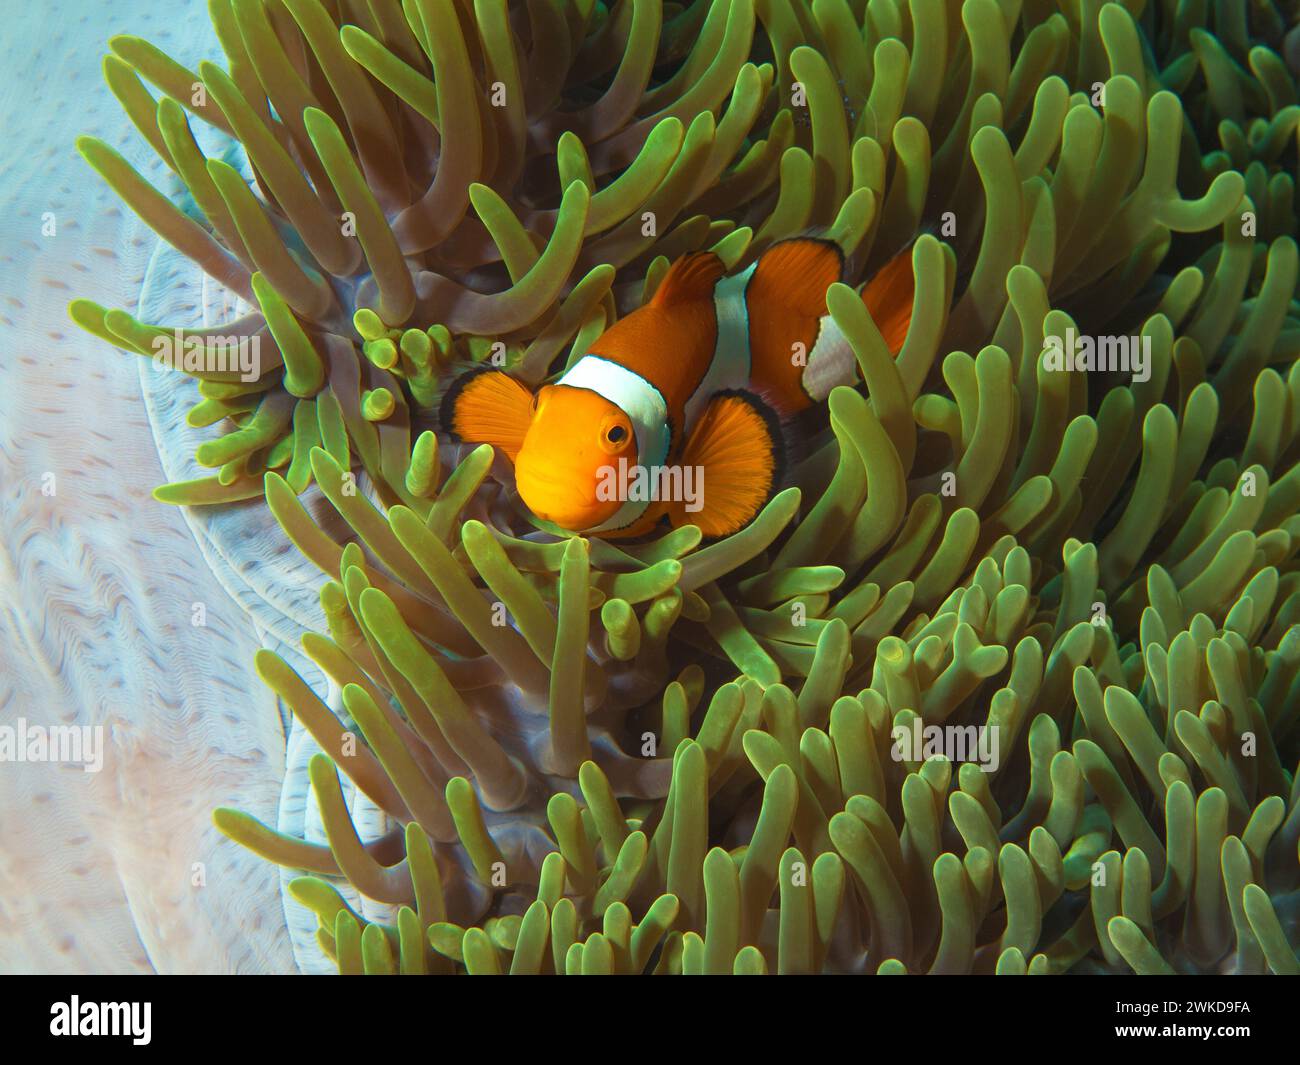 Gli Anemonefish sono molto curiosi: Nemofish nel suo magnifico anemone (Heteractis magnifica) nella barriera corallina, fotografie subacquee scattate a Raja Ampat Foto Stock